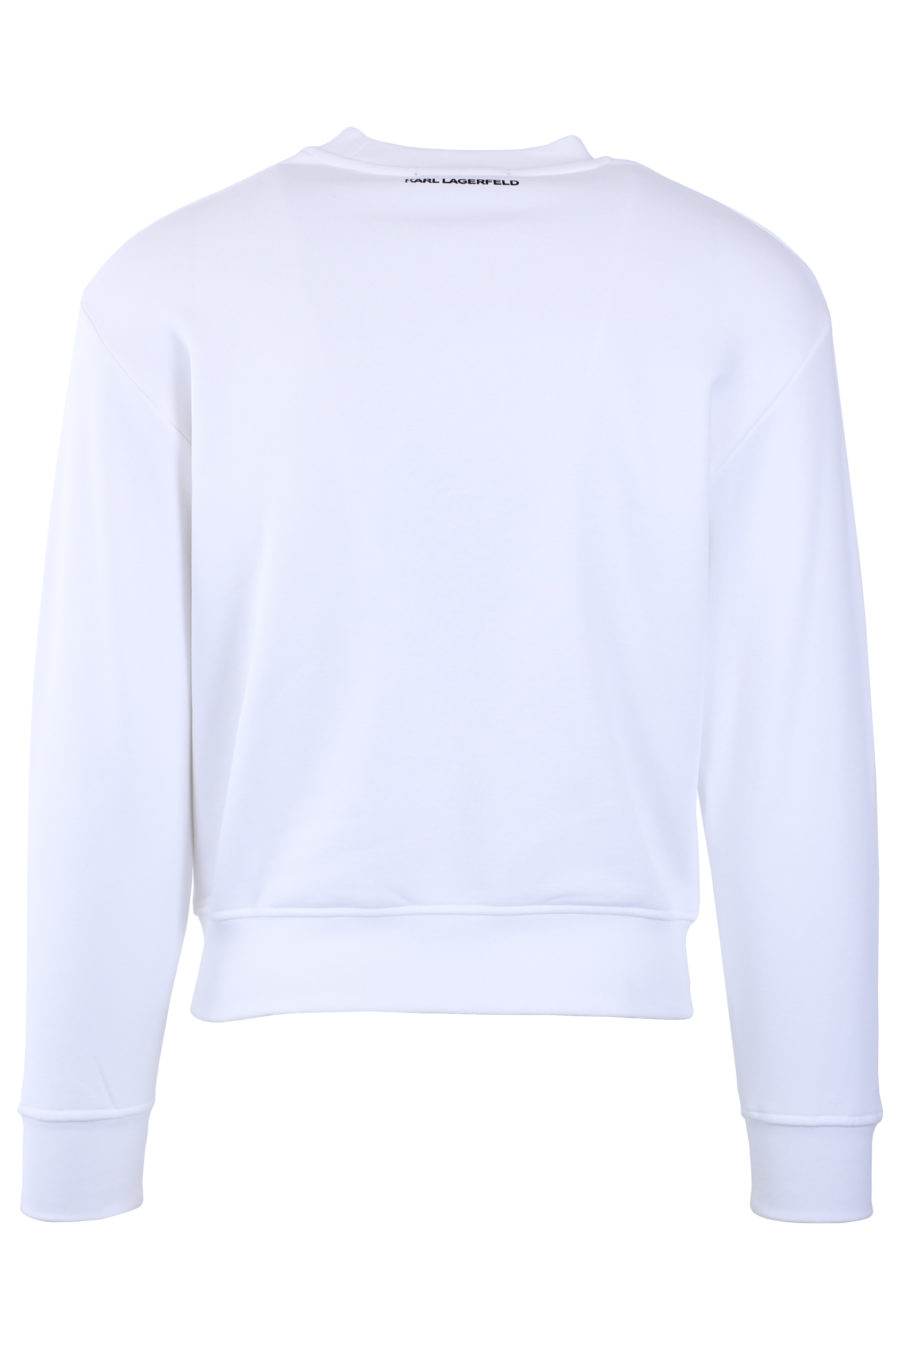 Sweat-shirt unisexe blanc avec logo - IMG 9044